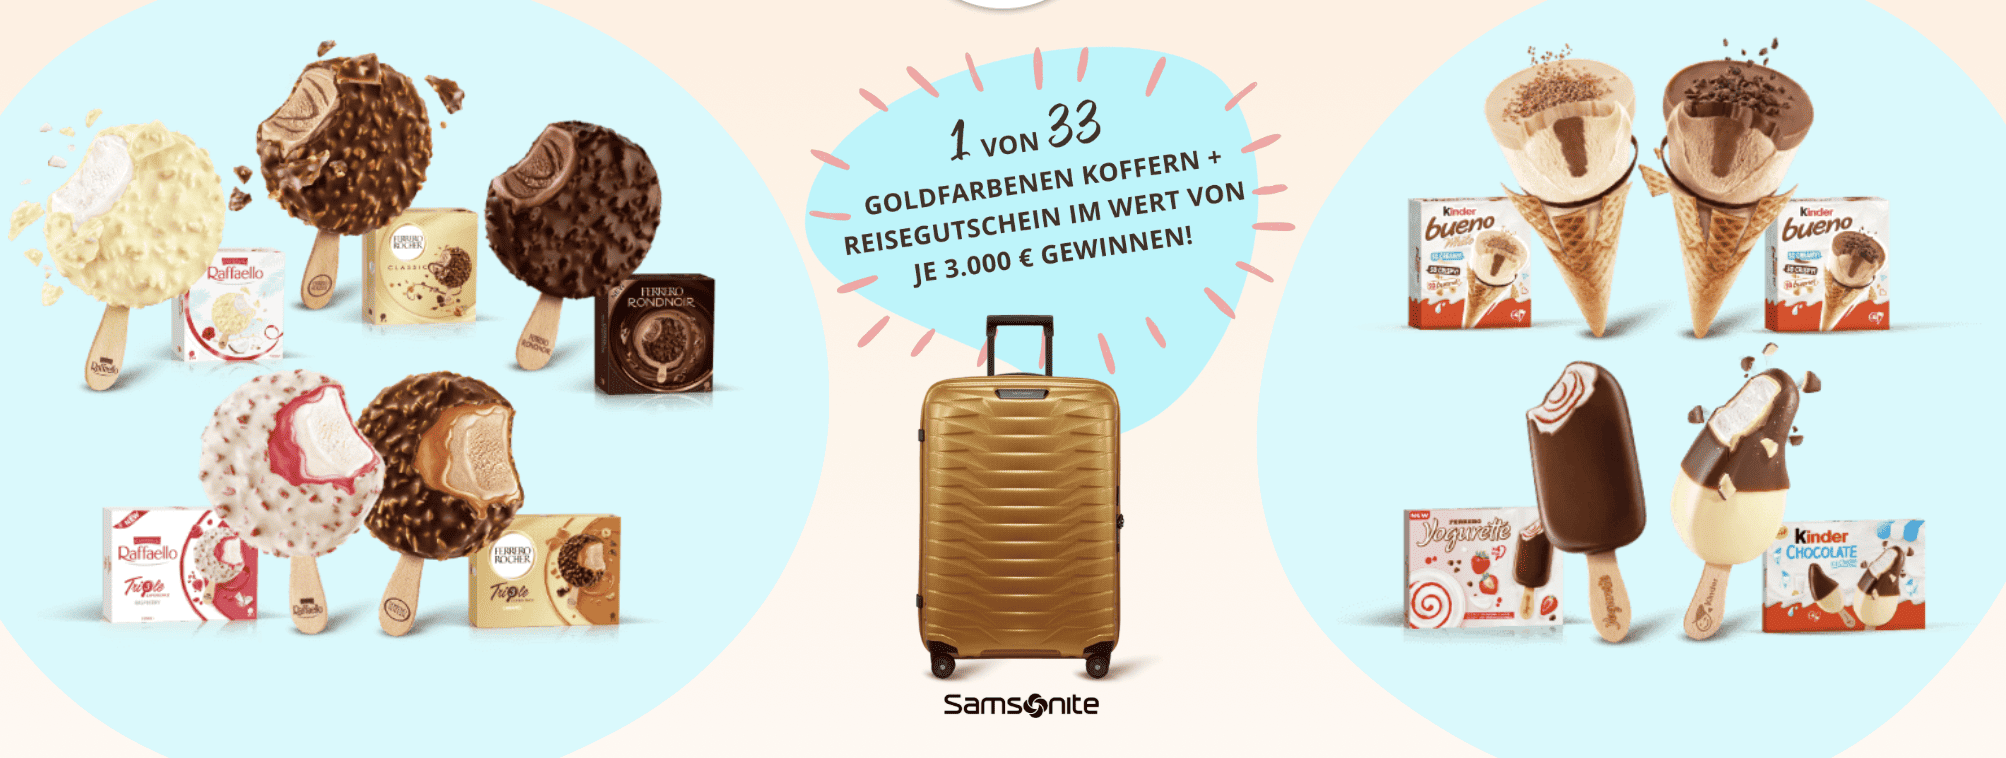 case_goldener Koffer“ Promotion von Ferrero